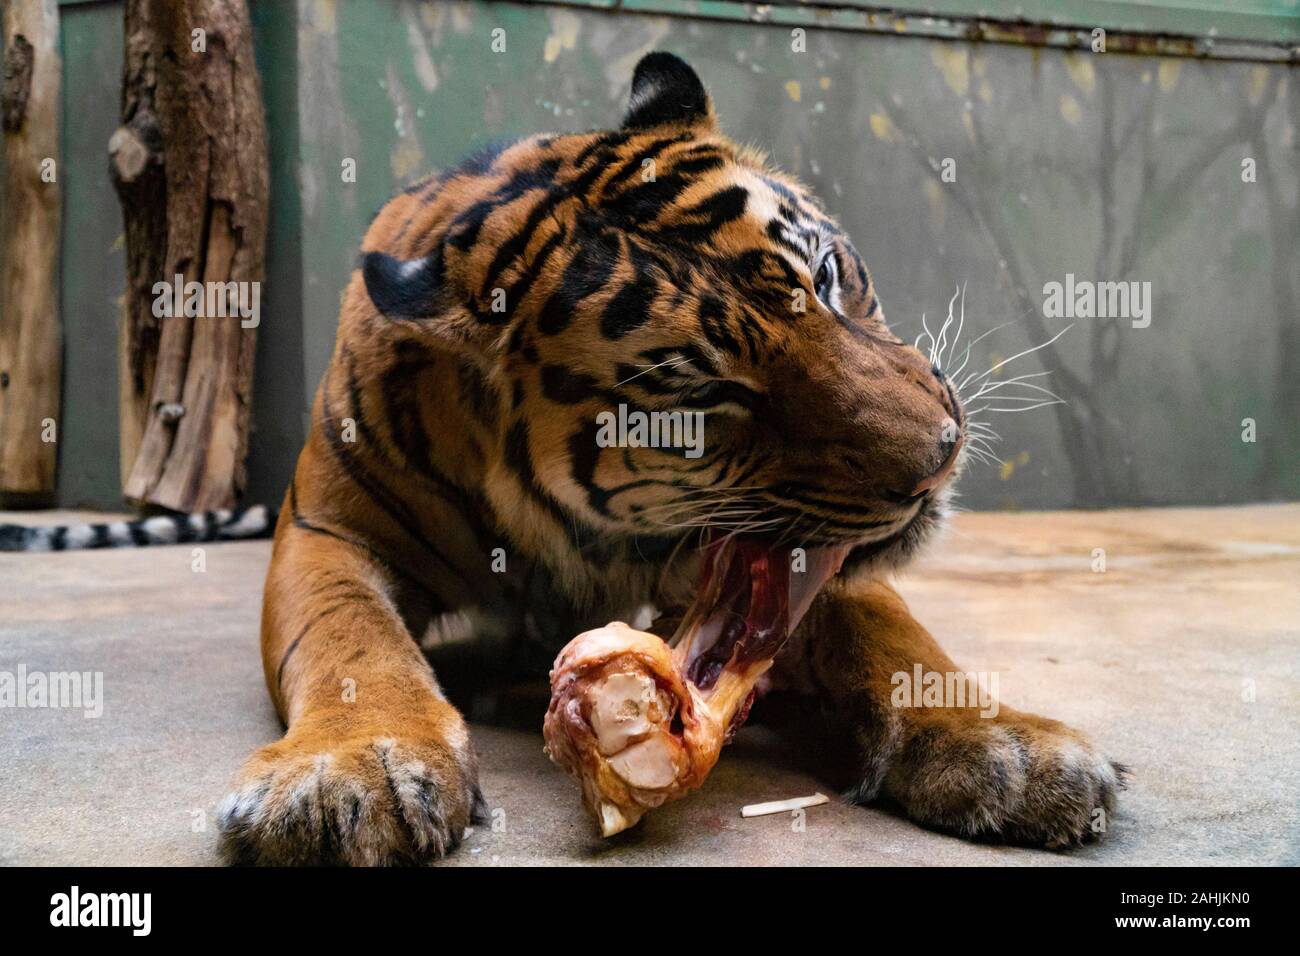 Manger de la viande rouge fraîche de tigres dans un zoo Banque D'Images